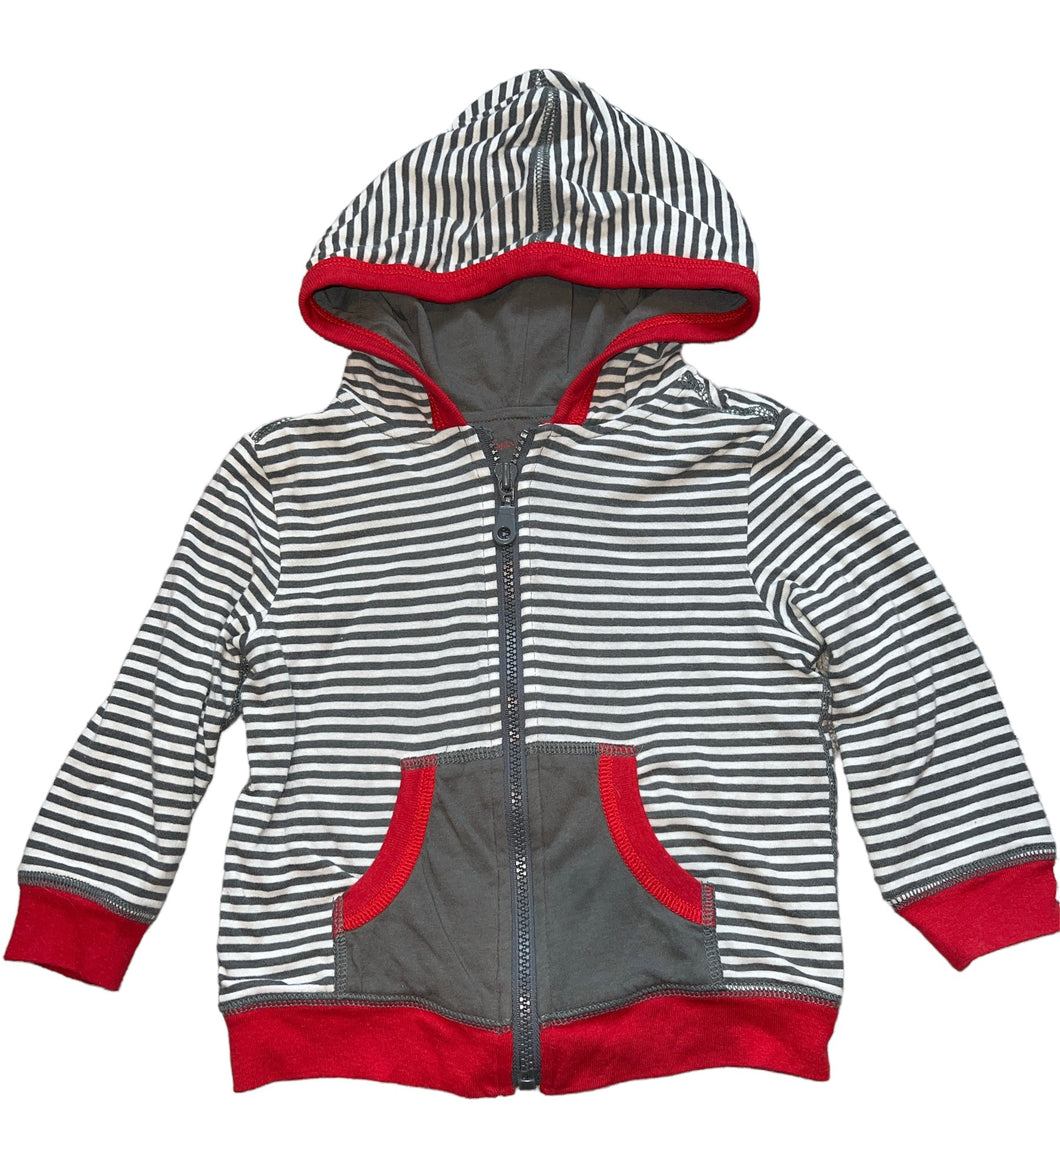 Splendid Littles baby boy striped zip hoodie 24m